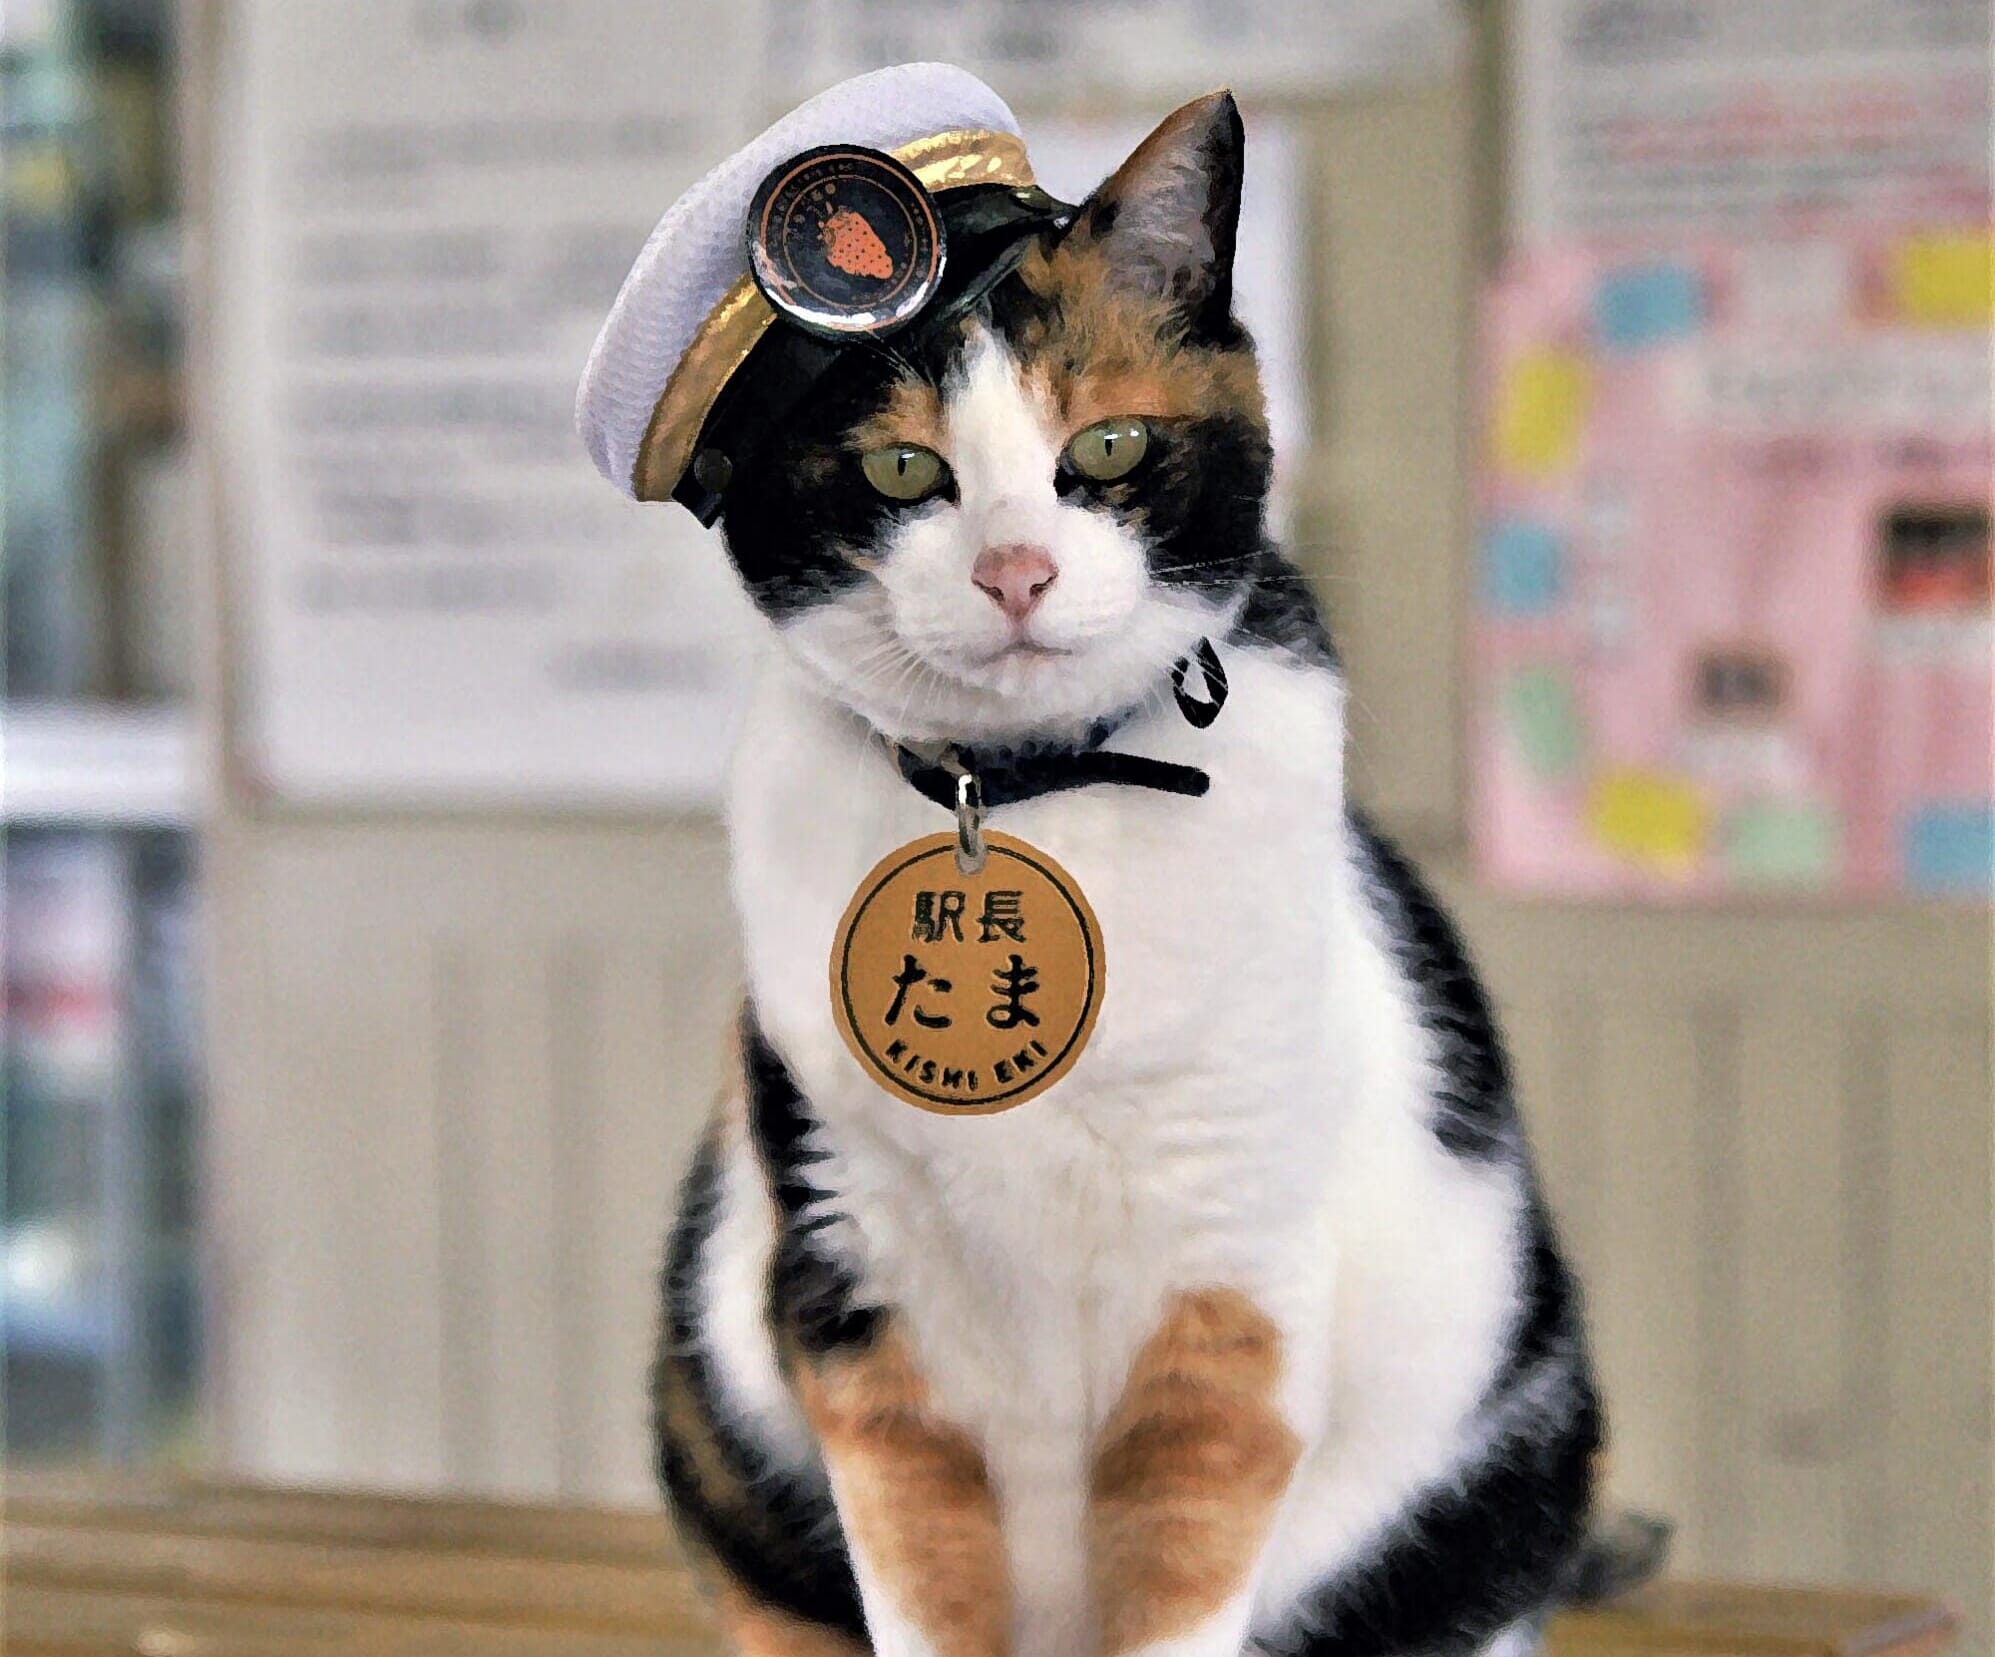 Cute train cat